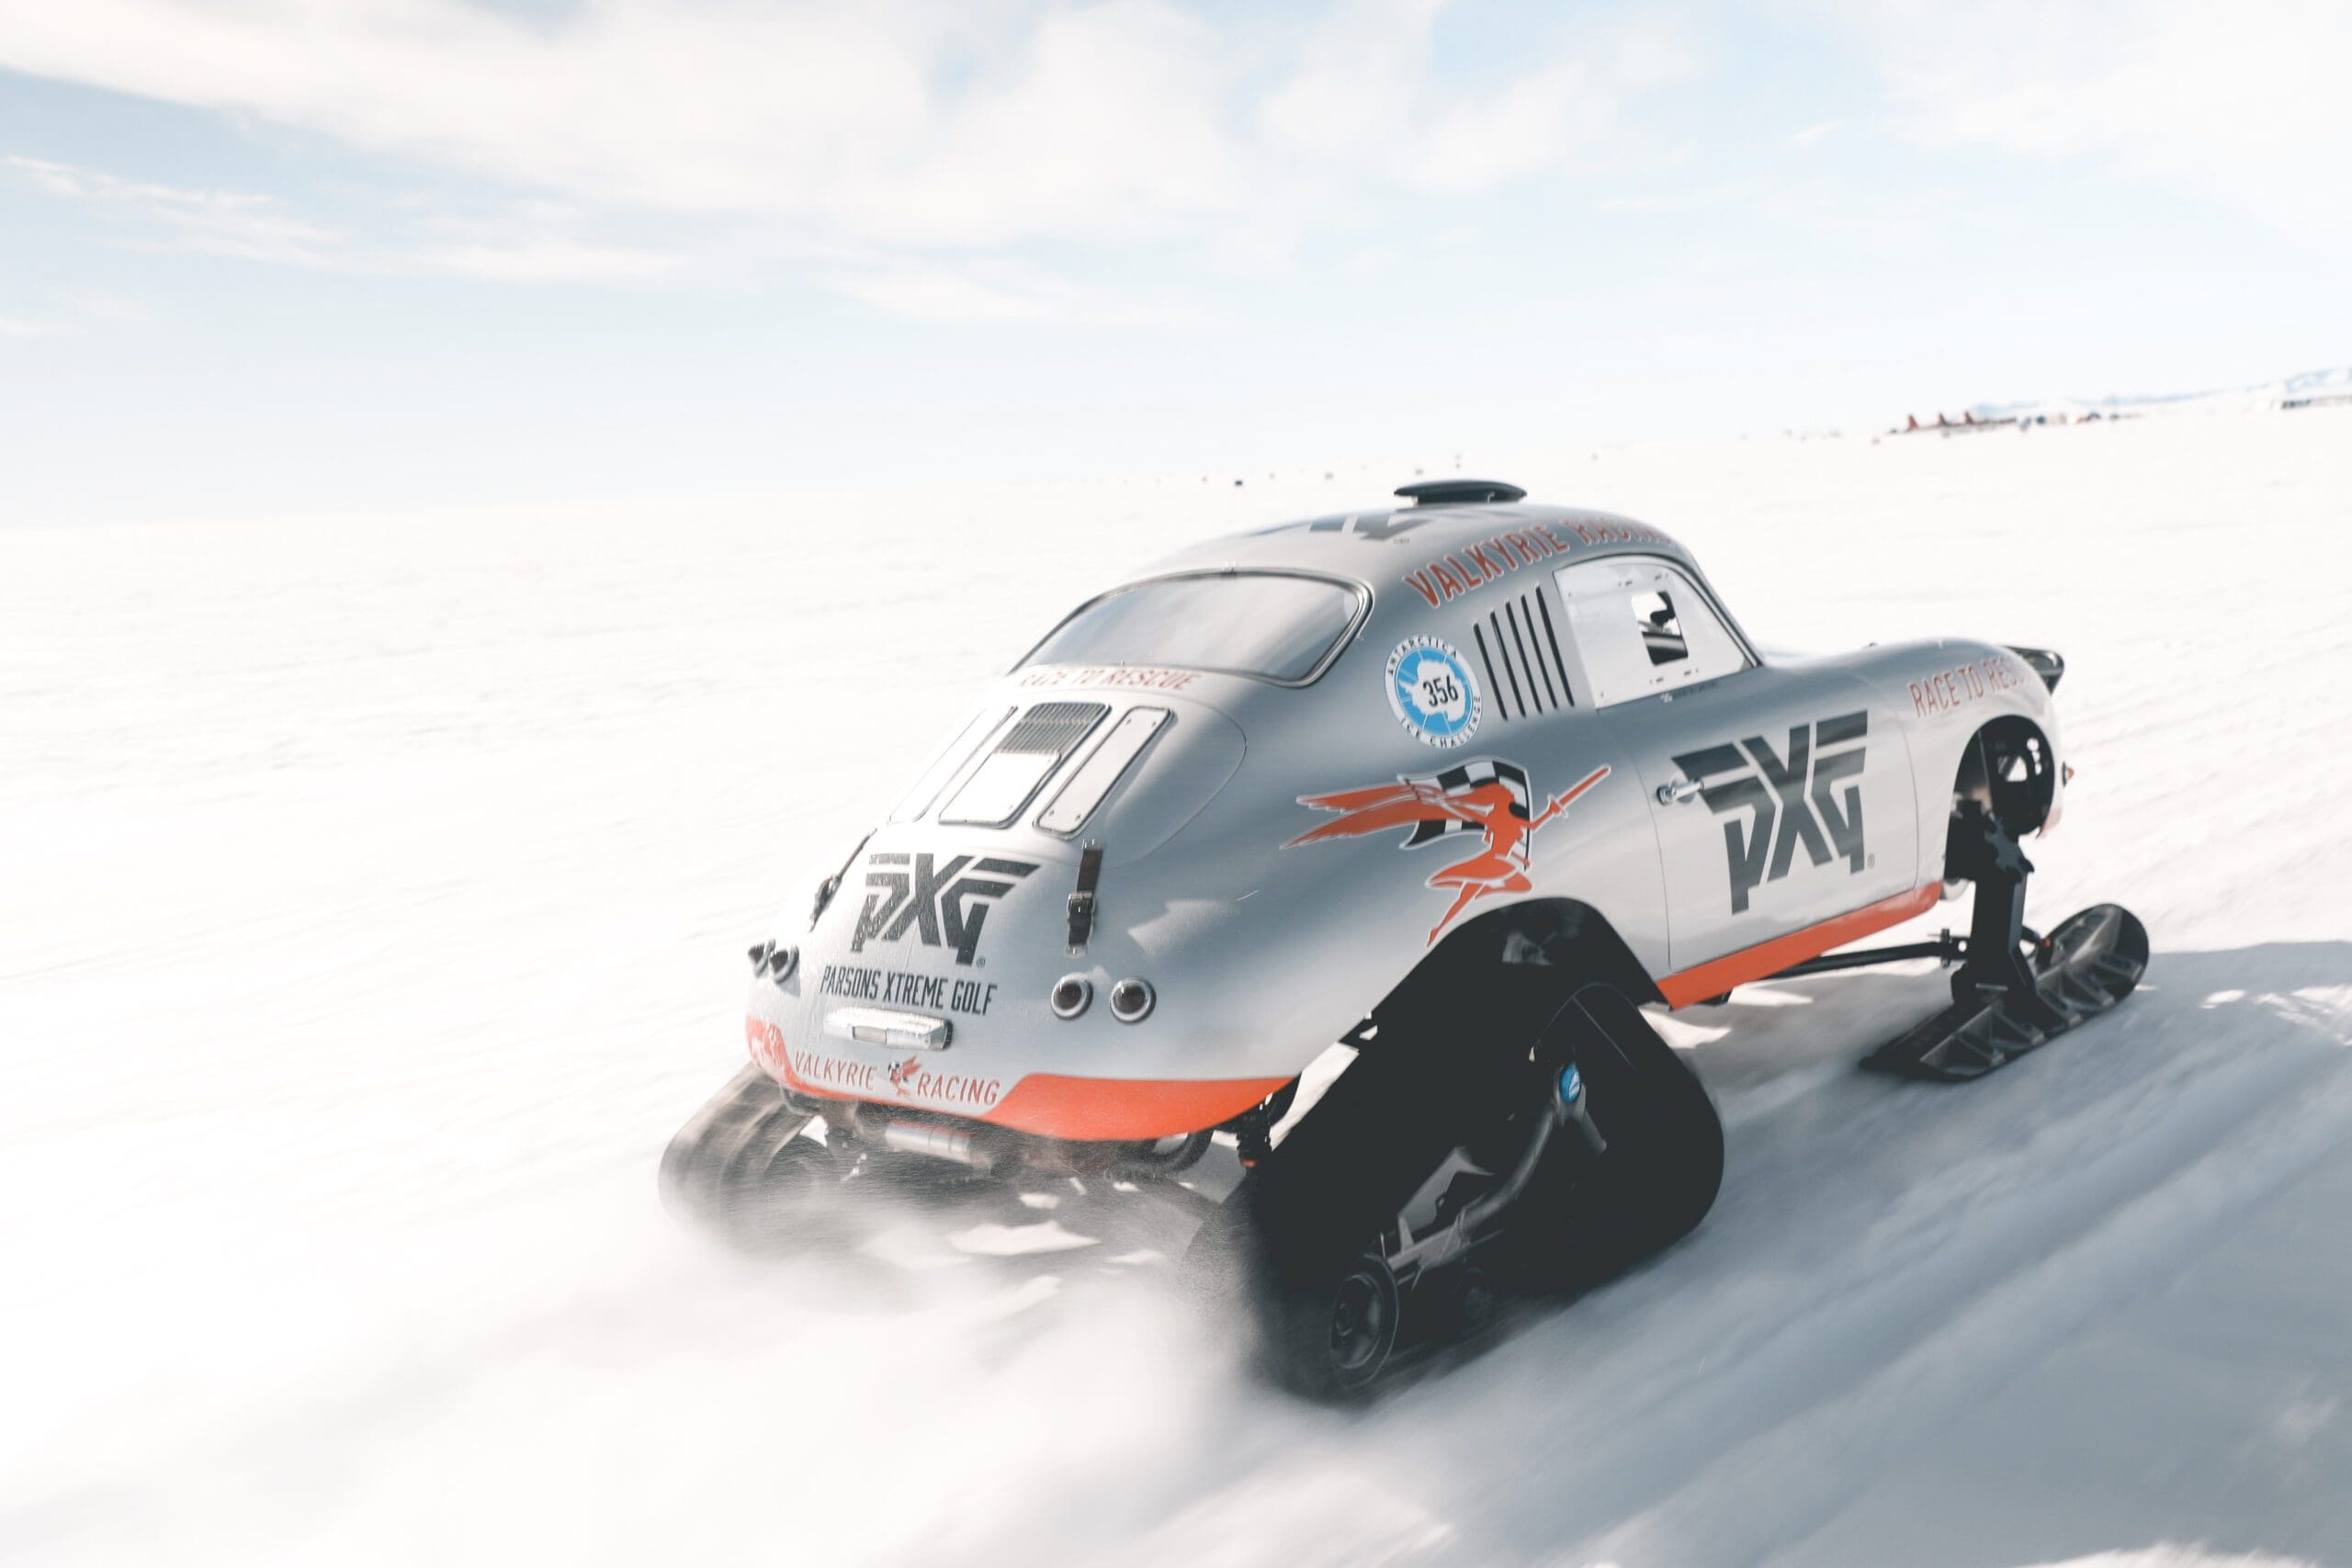 Polar Porsche, Deze Polar Porsche 356 maakt zelfs Antarctica onveilig